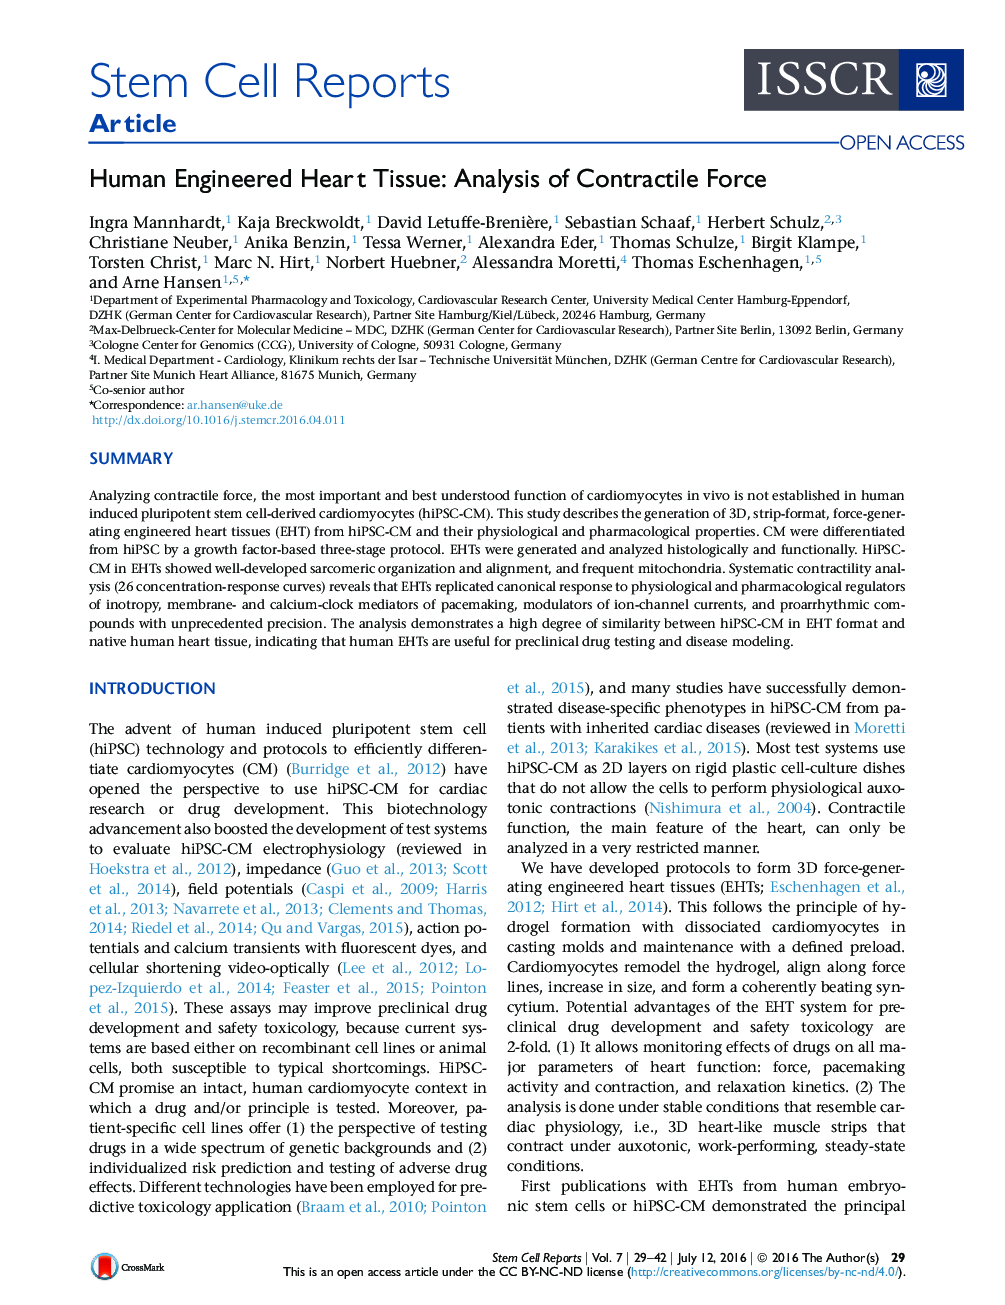 انسانی قلب مهندسی شده: تجزیه و تحلیل نیروی متخلخل 